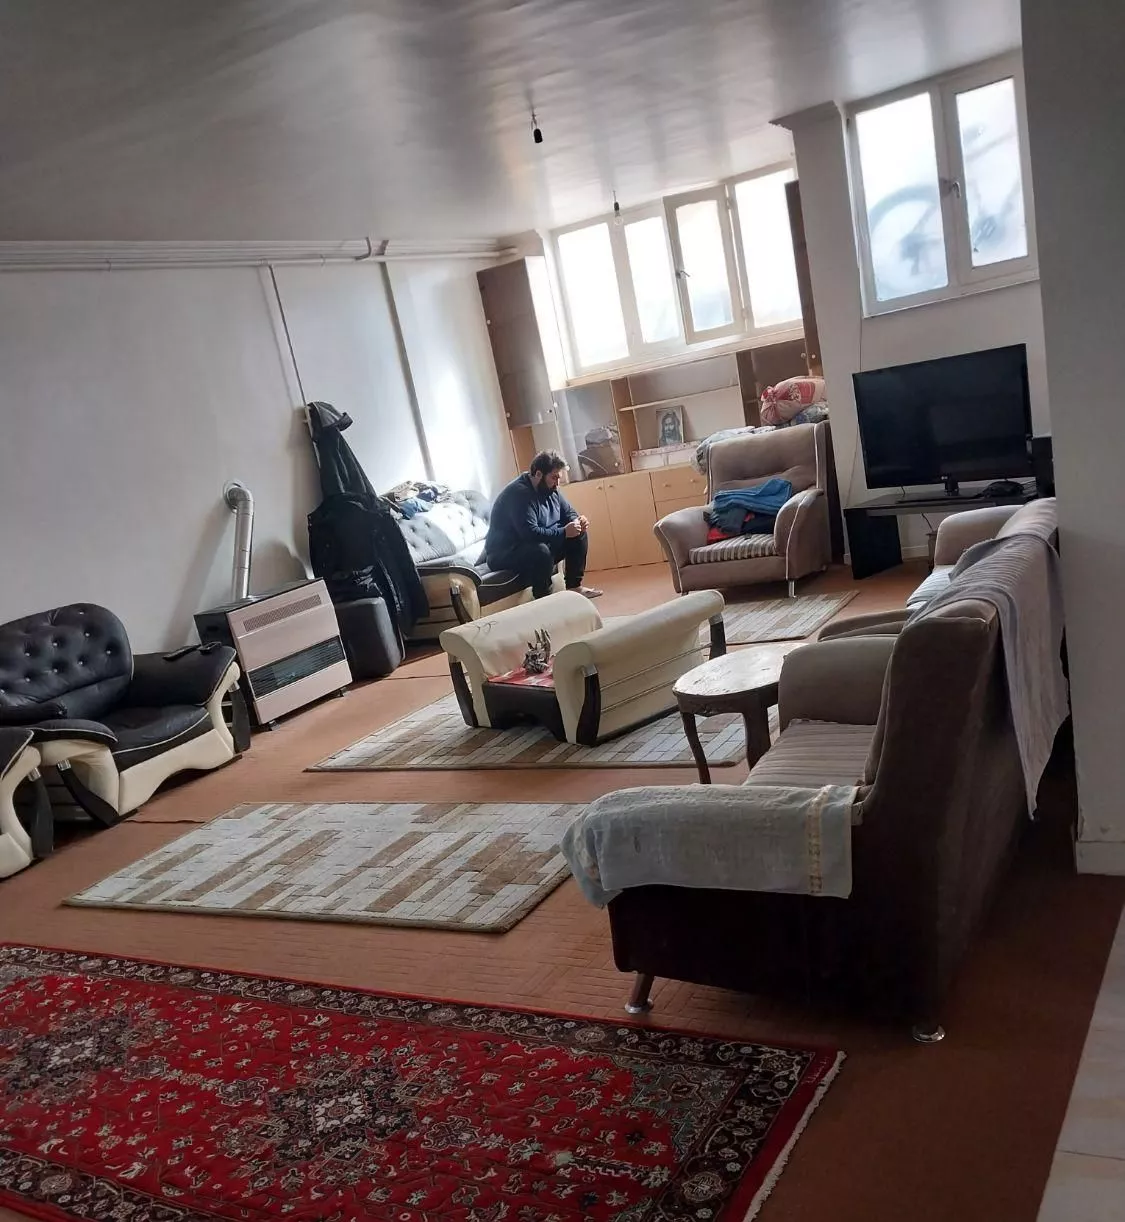 آپارتمان شخصی ساز با شش دانگ سند در فجر ،شهرک نور